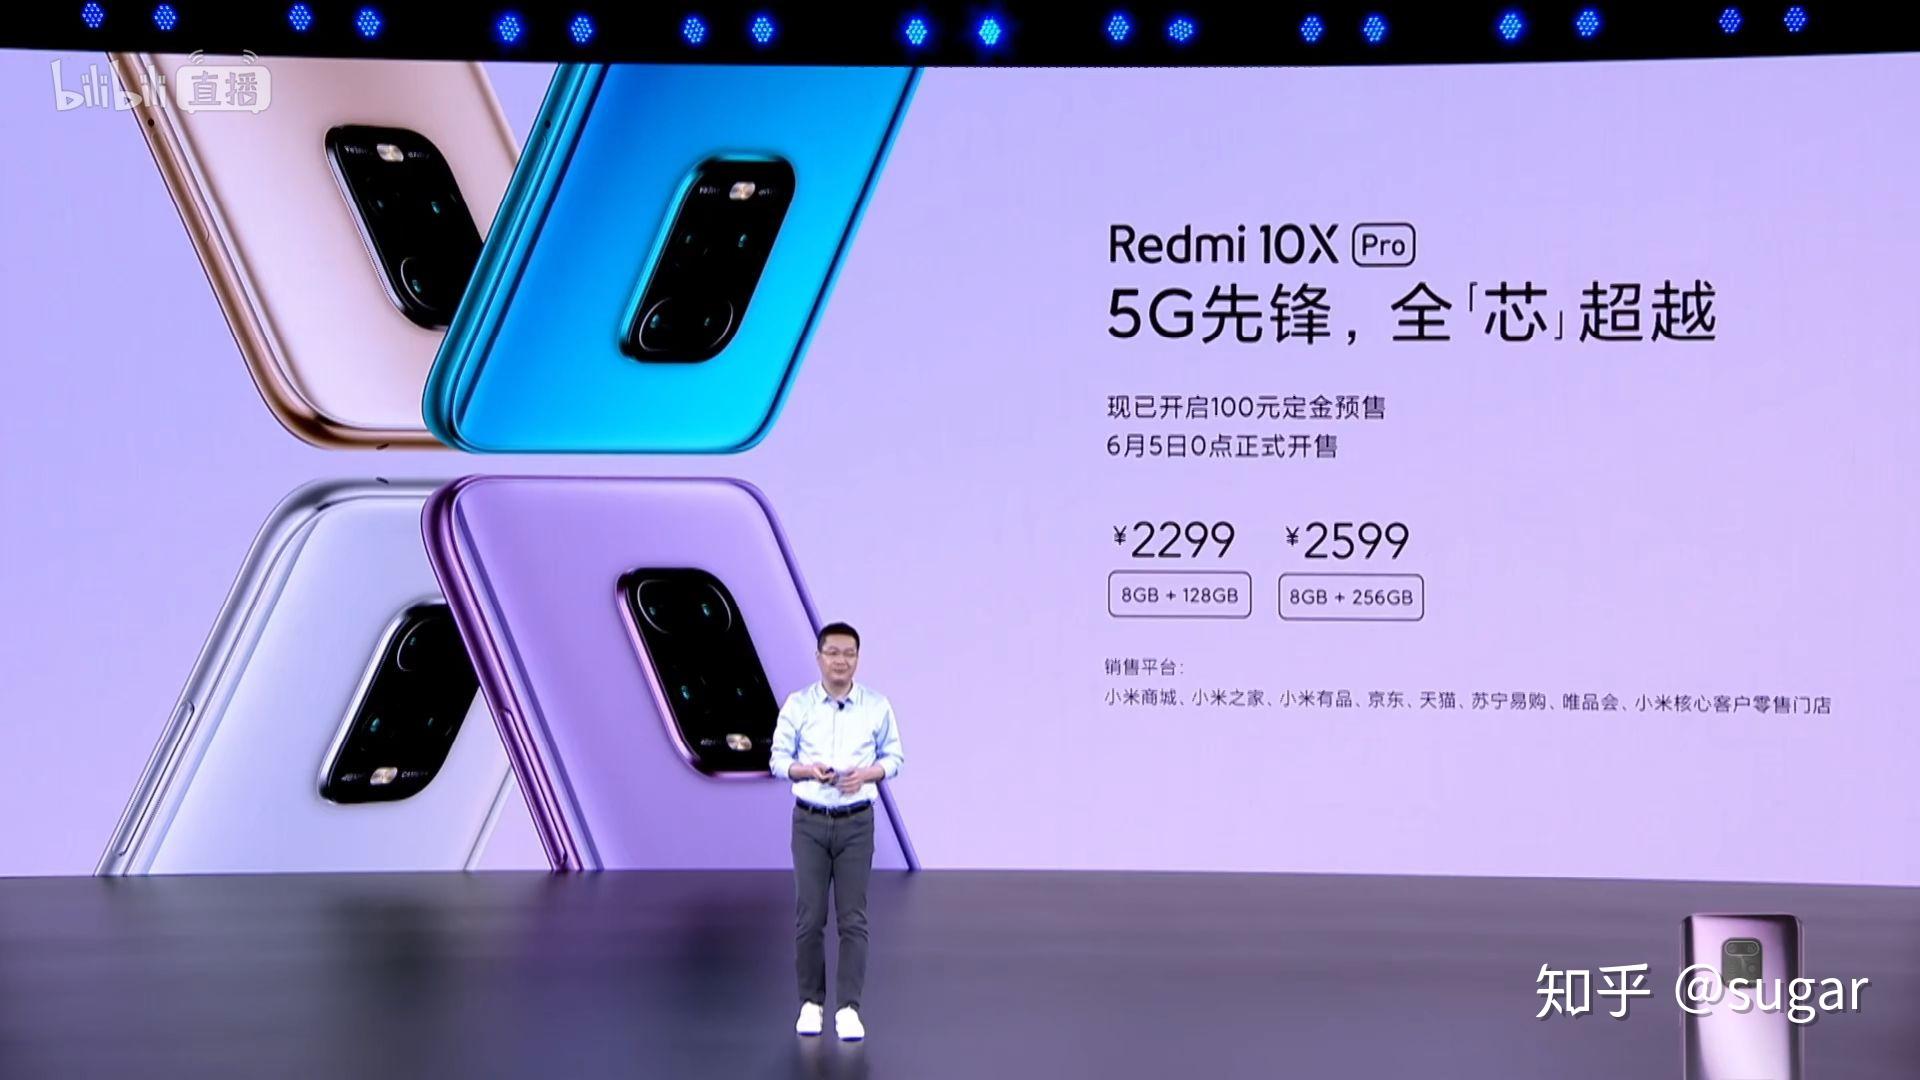 红米手机 redmi 10x 如何评价 5月 26日 redmi 10 x系列发布会?